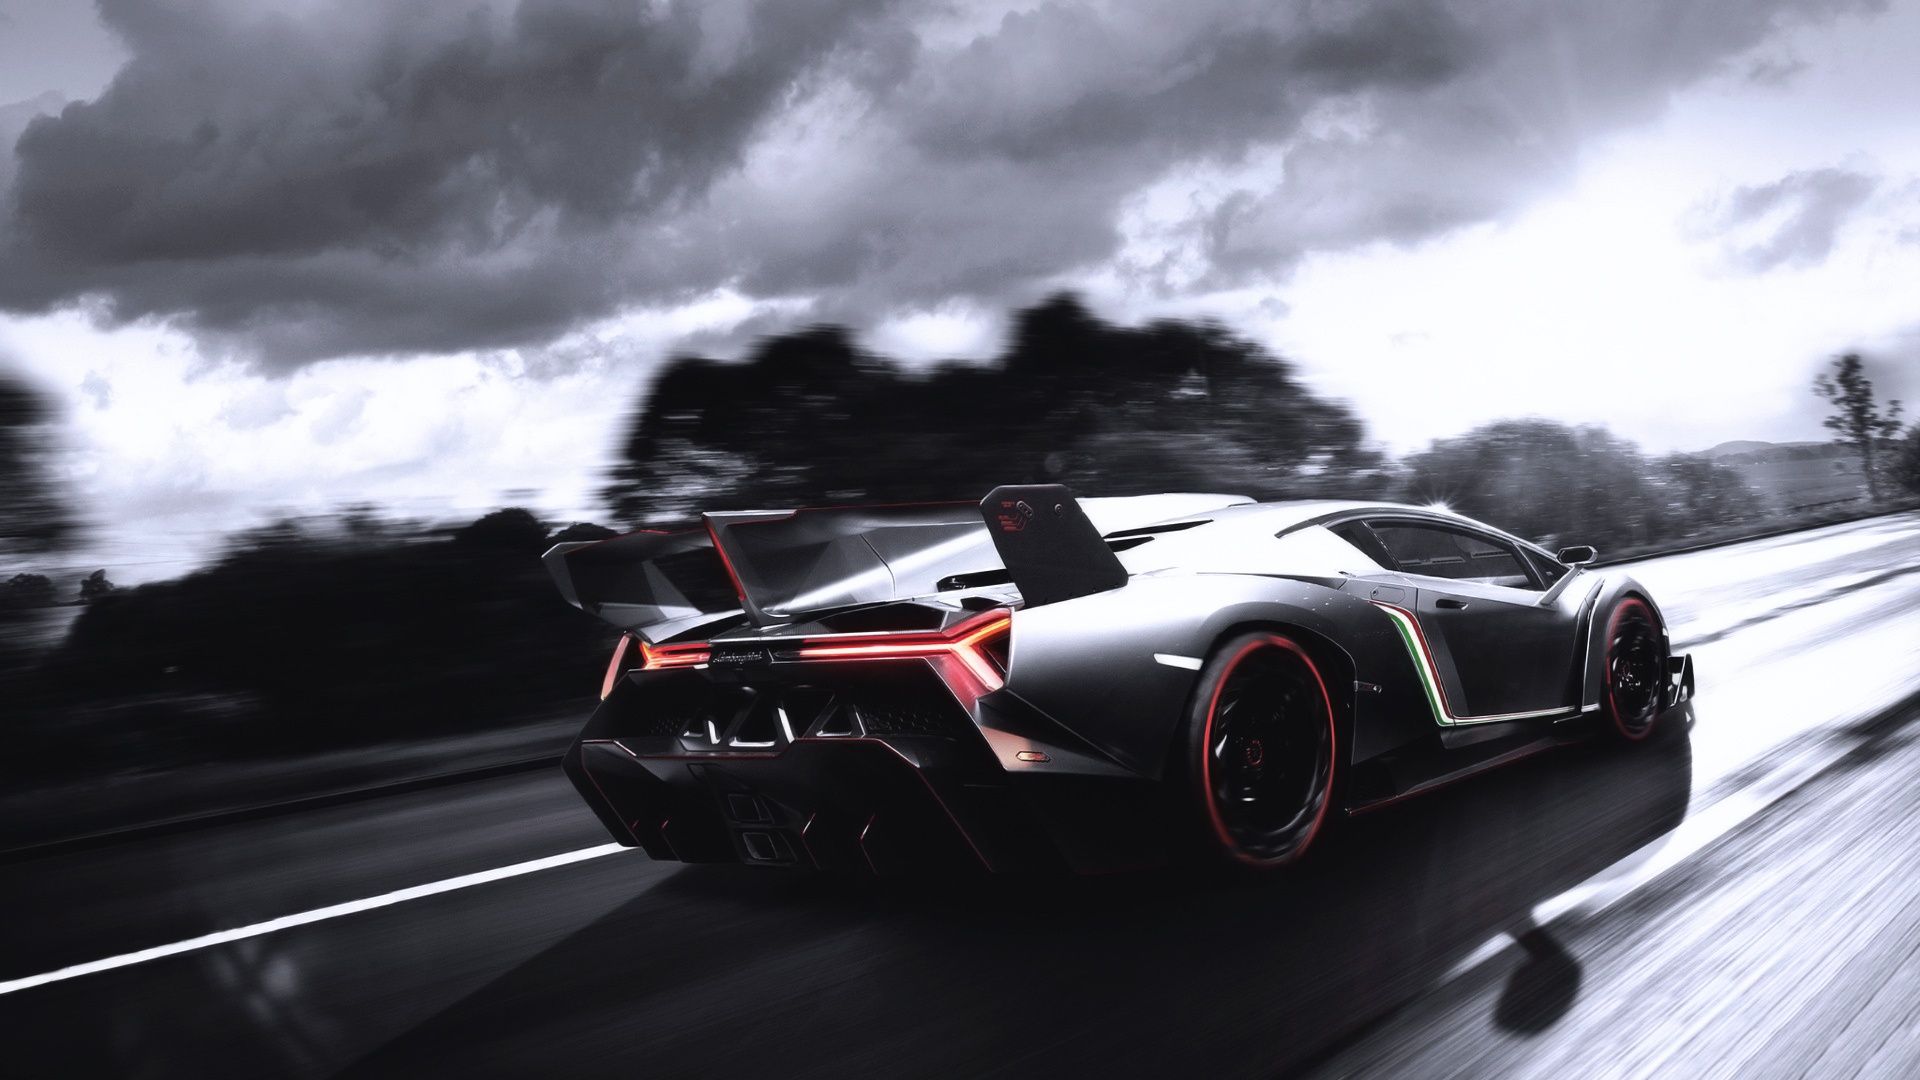 Lamborghini supercar at road high speed Wallpapers | HD Desktop ...